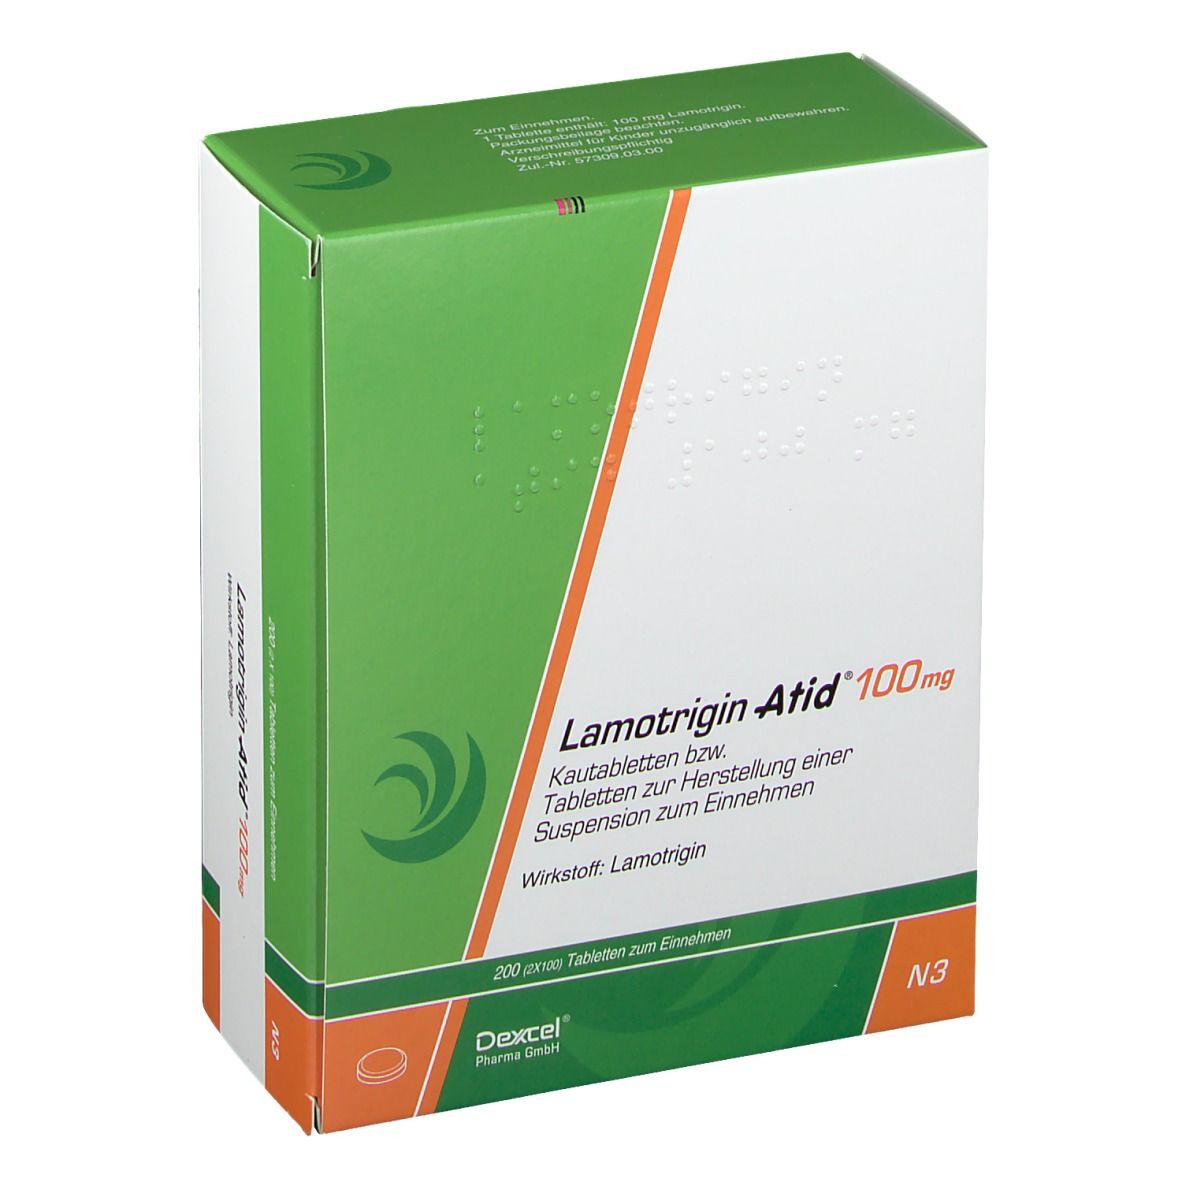 Lamotrigin Atid® 100 mg